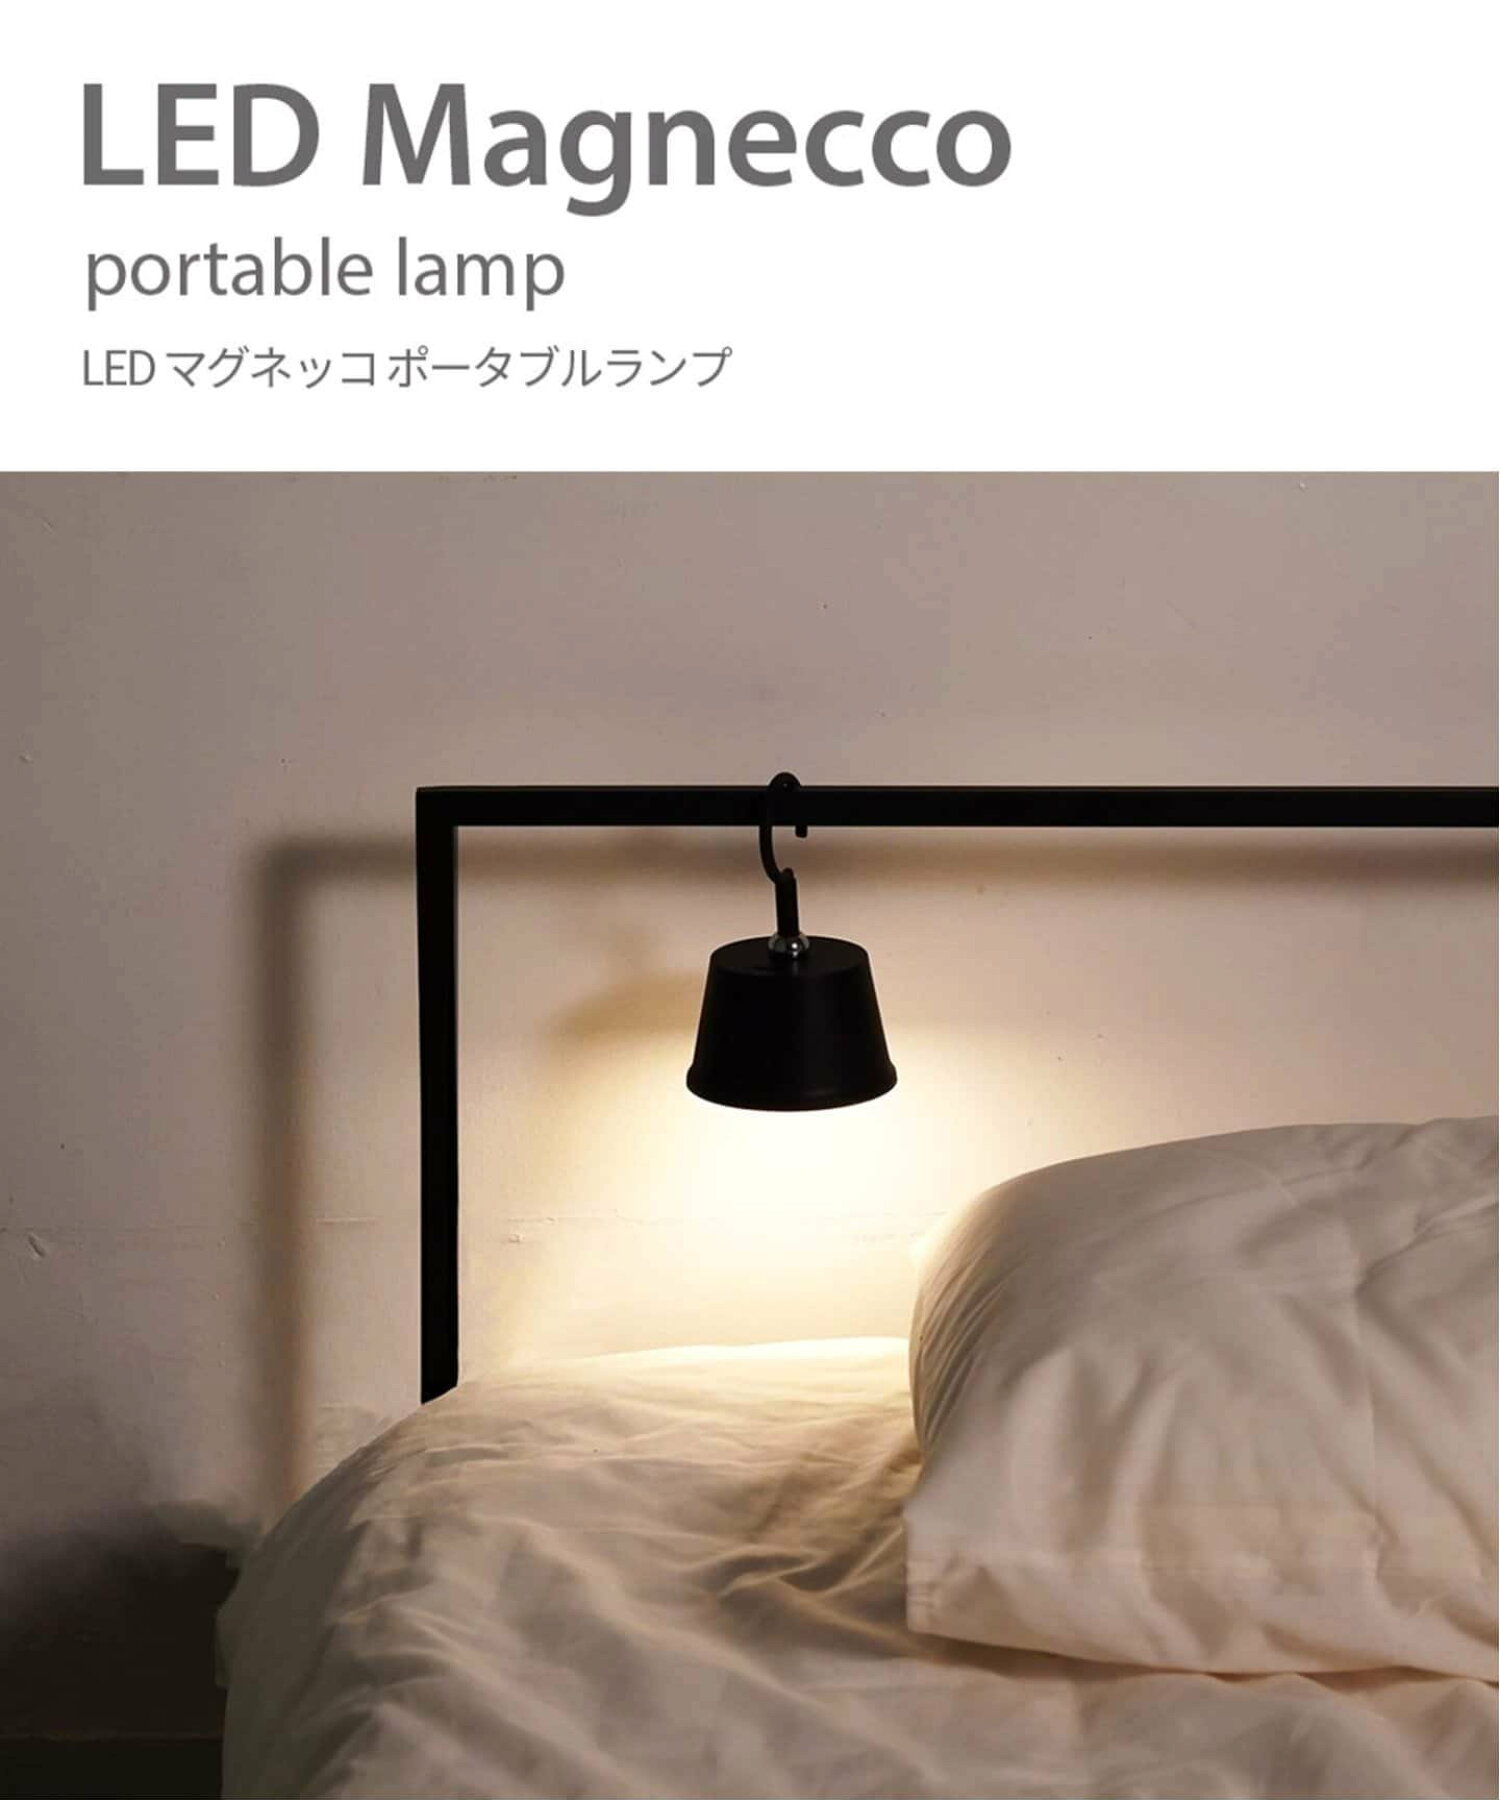 LED Magnecco Portable Lamp マグネッコ ポータブル ランプ  テーブルランプ